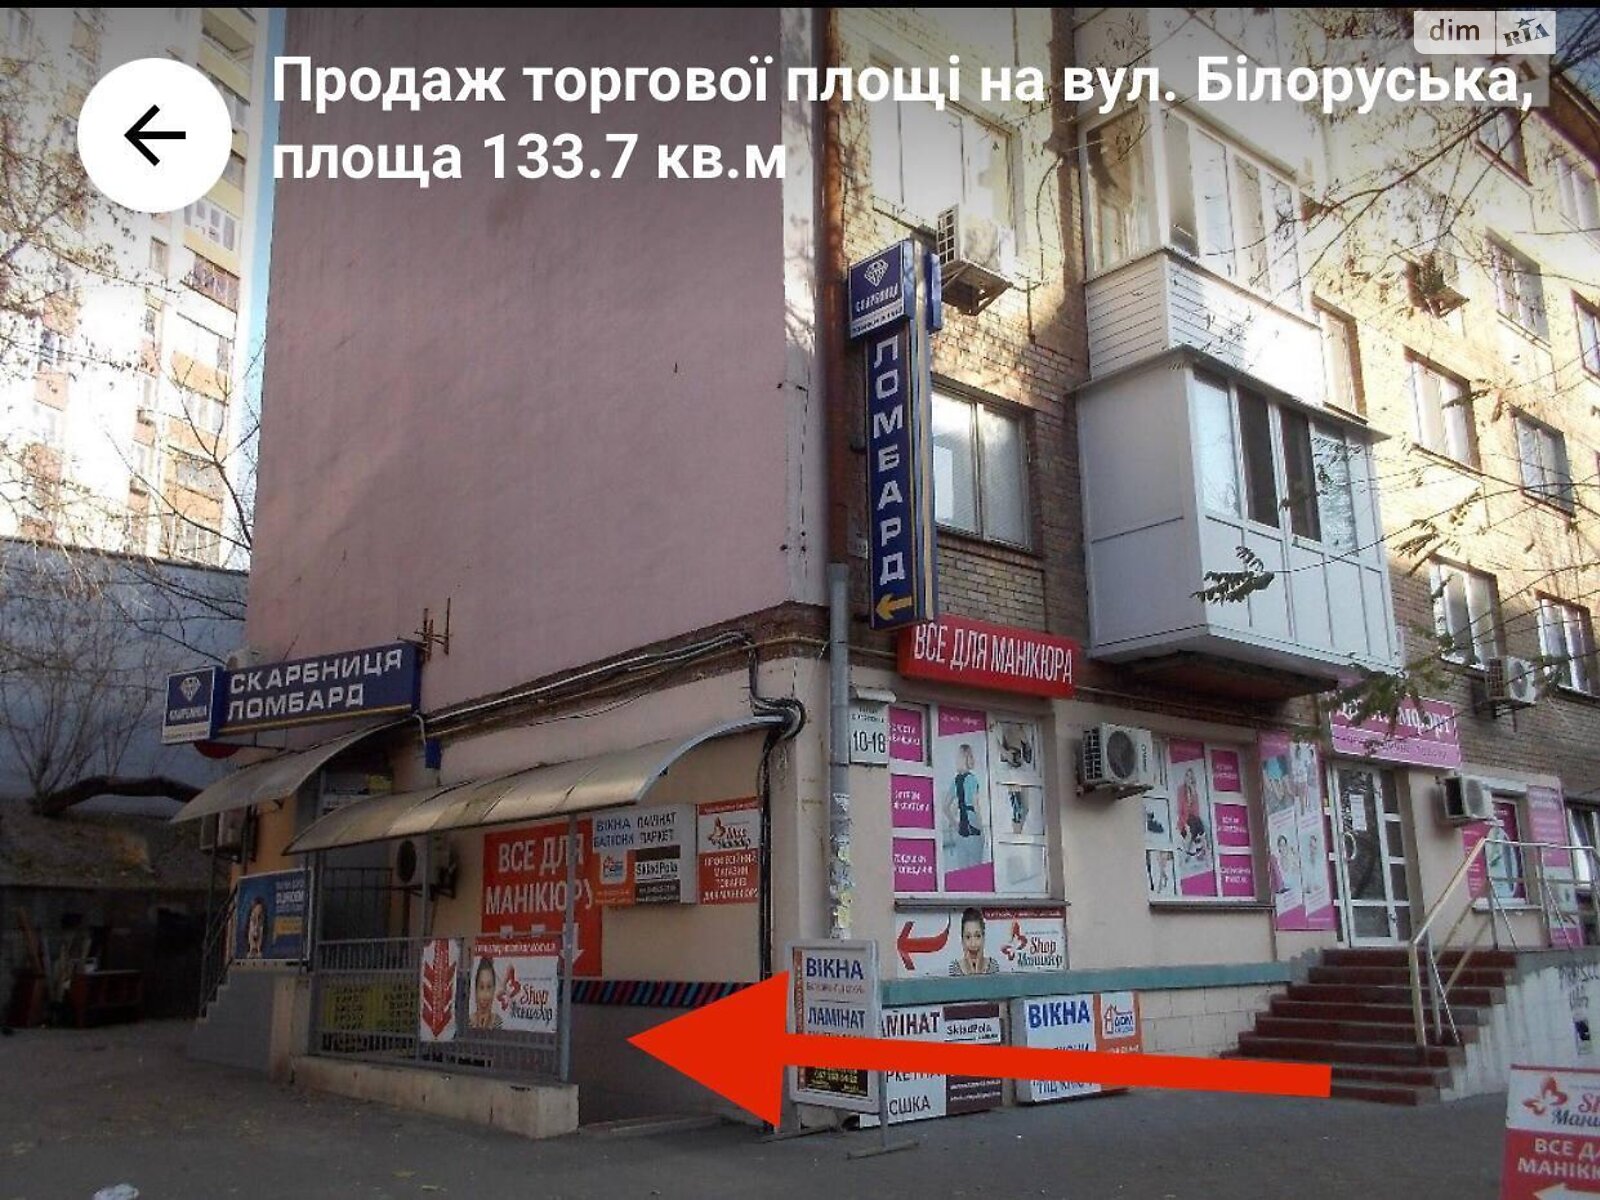 Офисное помещение на 133 кв.м. в Киеве фото 1